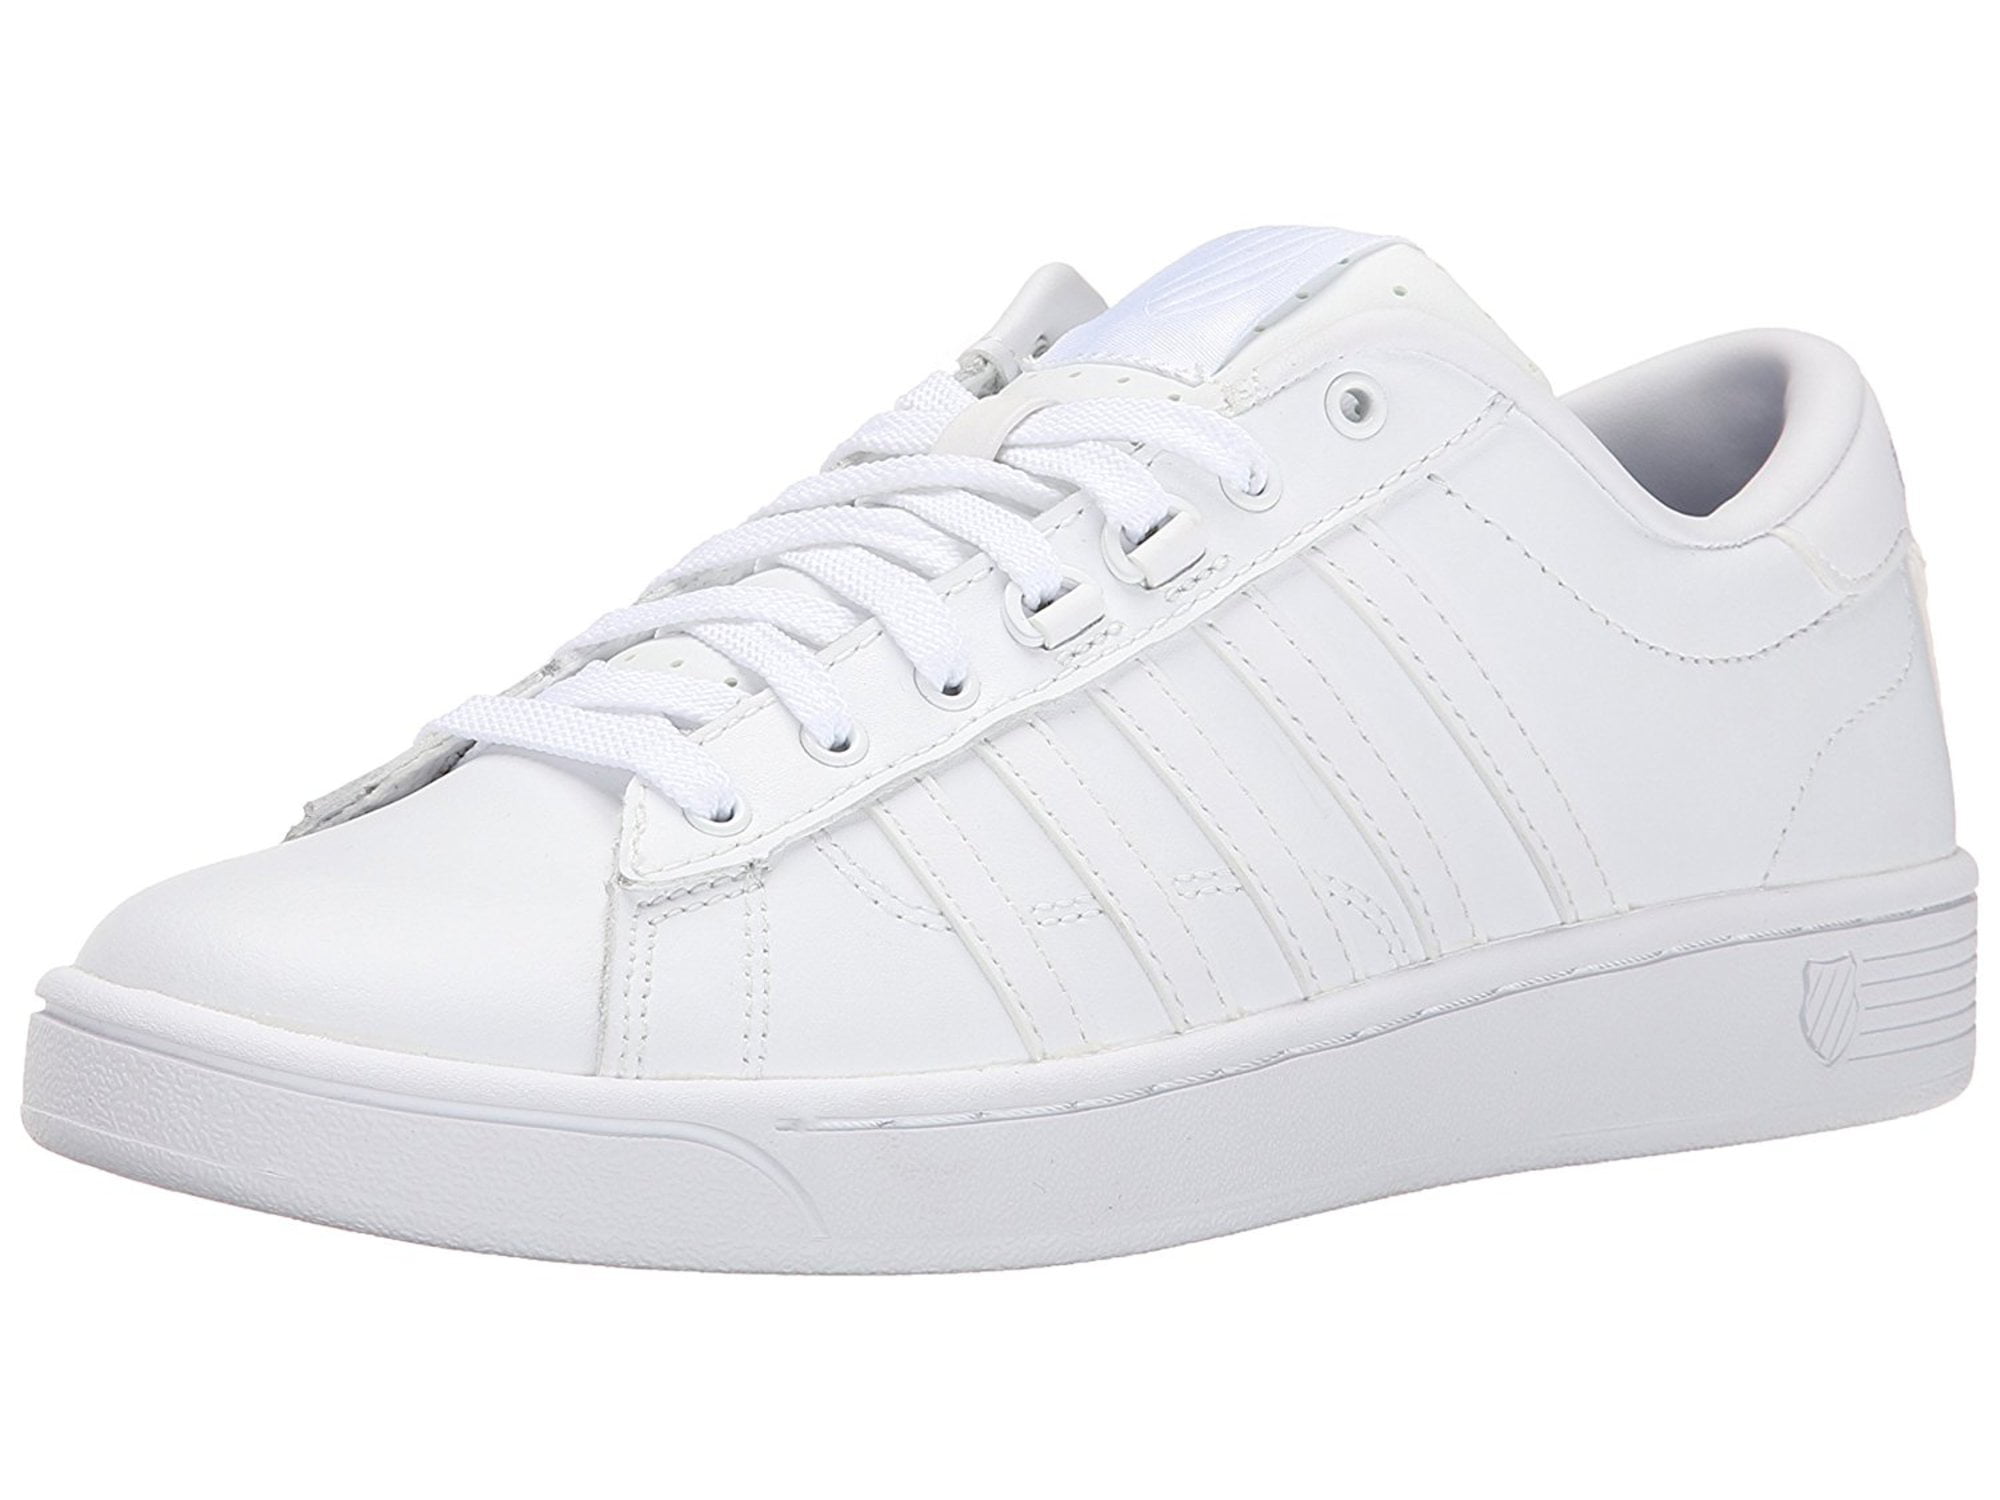 K-Swiss - K-Swiss Women's Hoke Cmf Sneaker, White/White, Size 10.0 ...